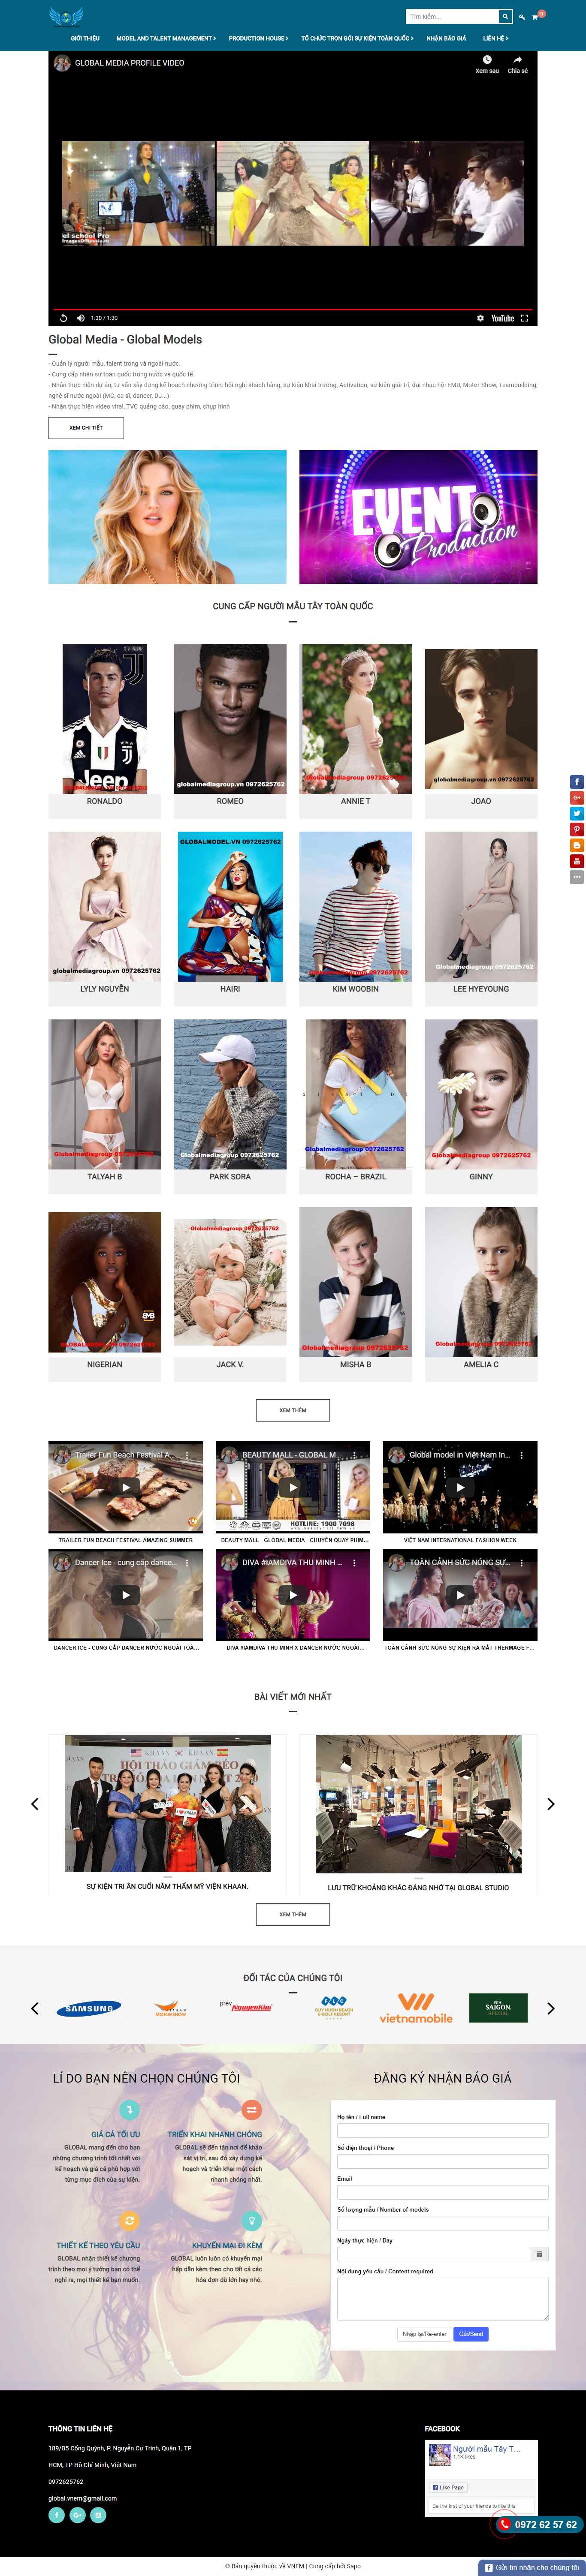 Thiết kế Website công ty người mẫu model - nguoimautay.com